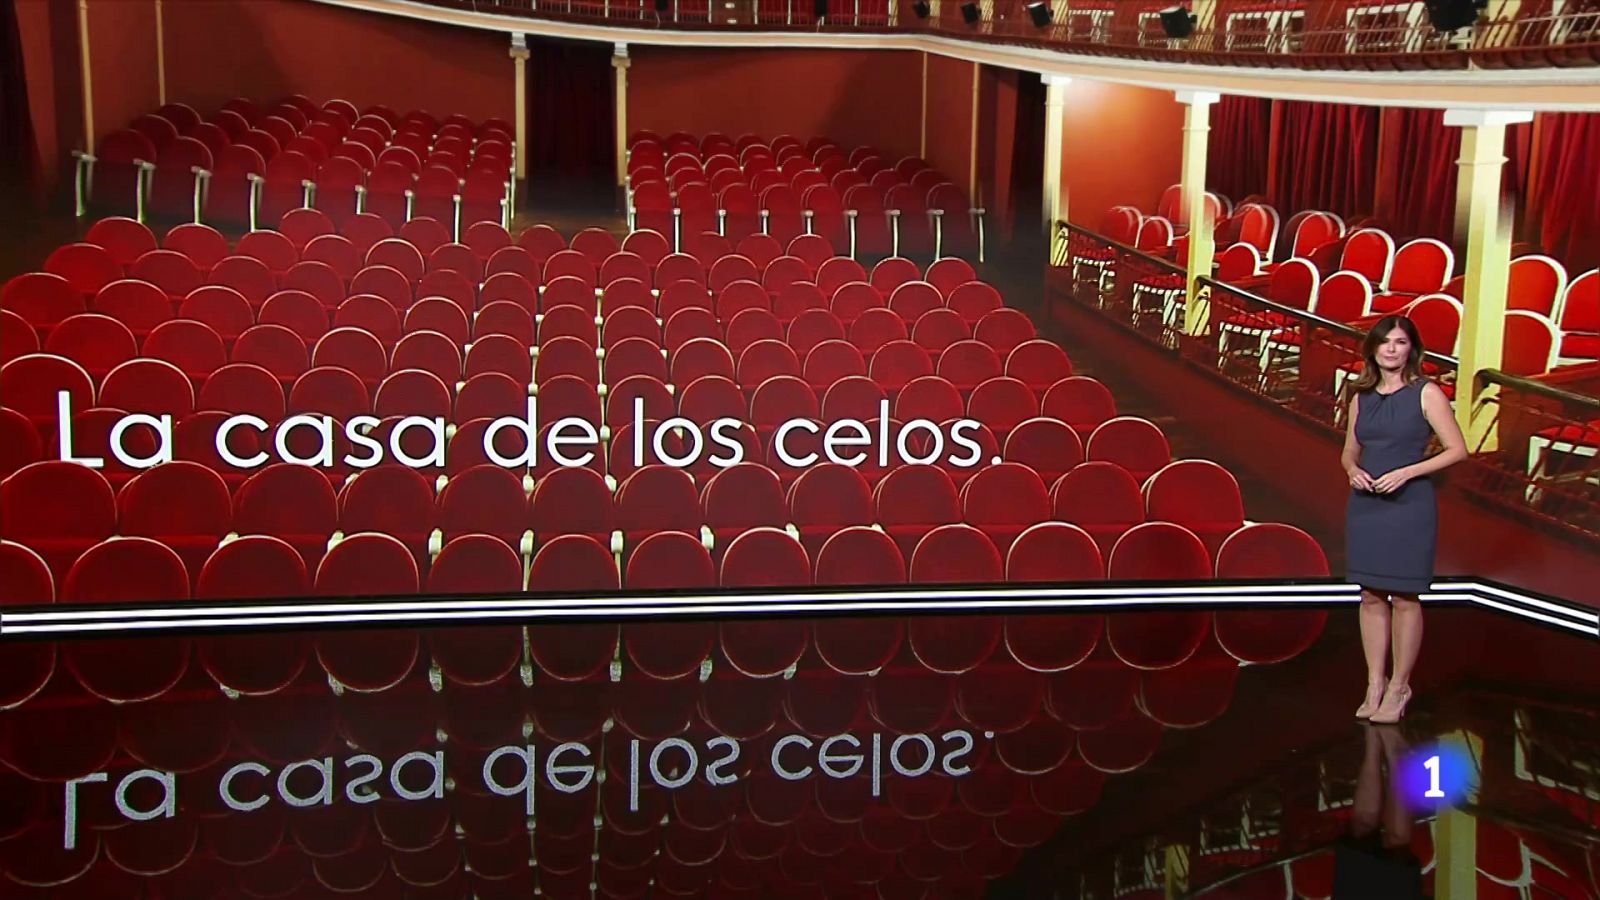 La casa de los celos de Cervantes, próximo estreno -Ver ahora